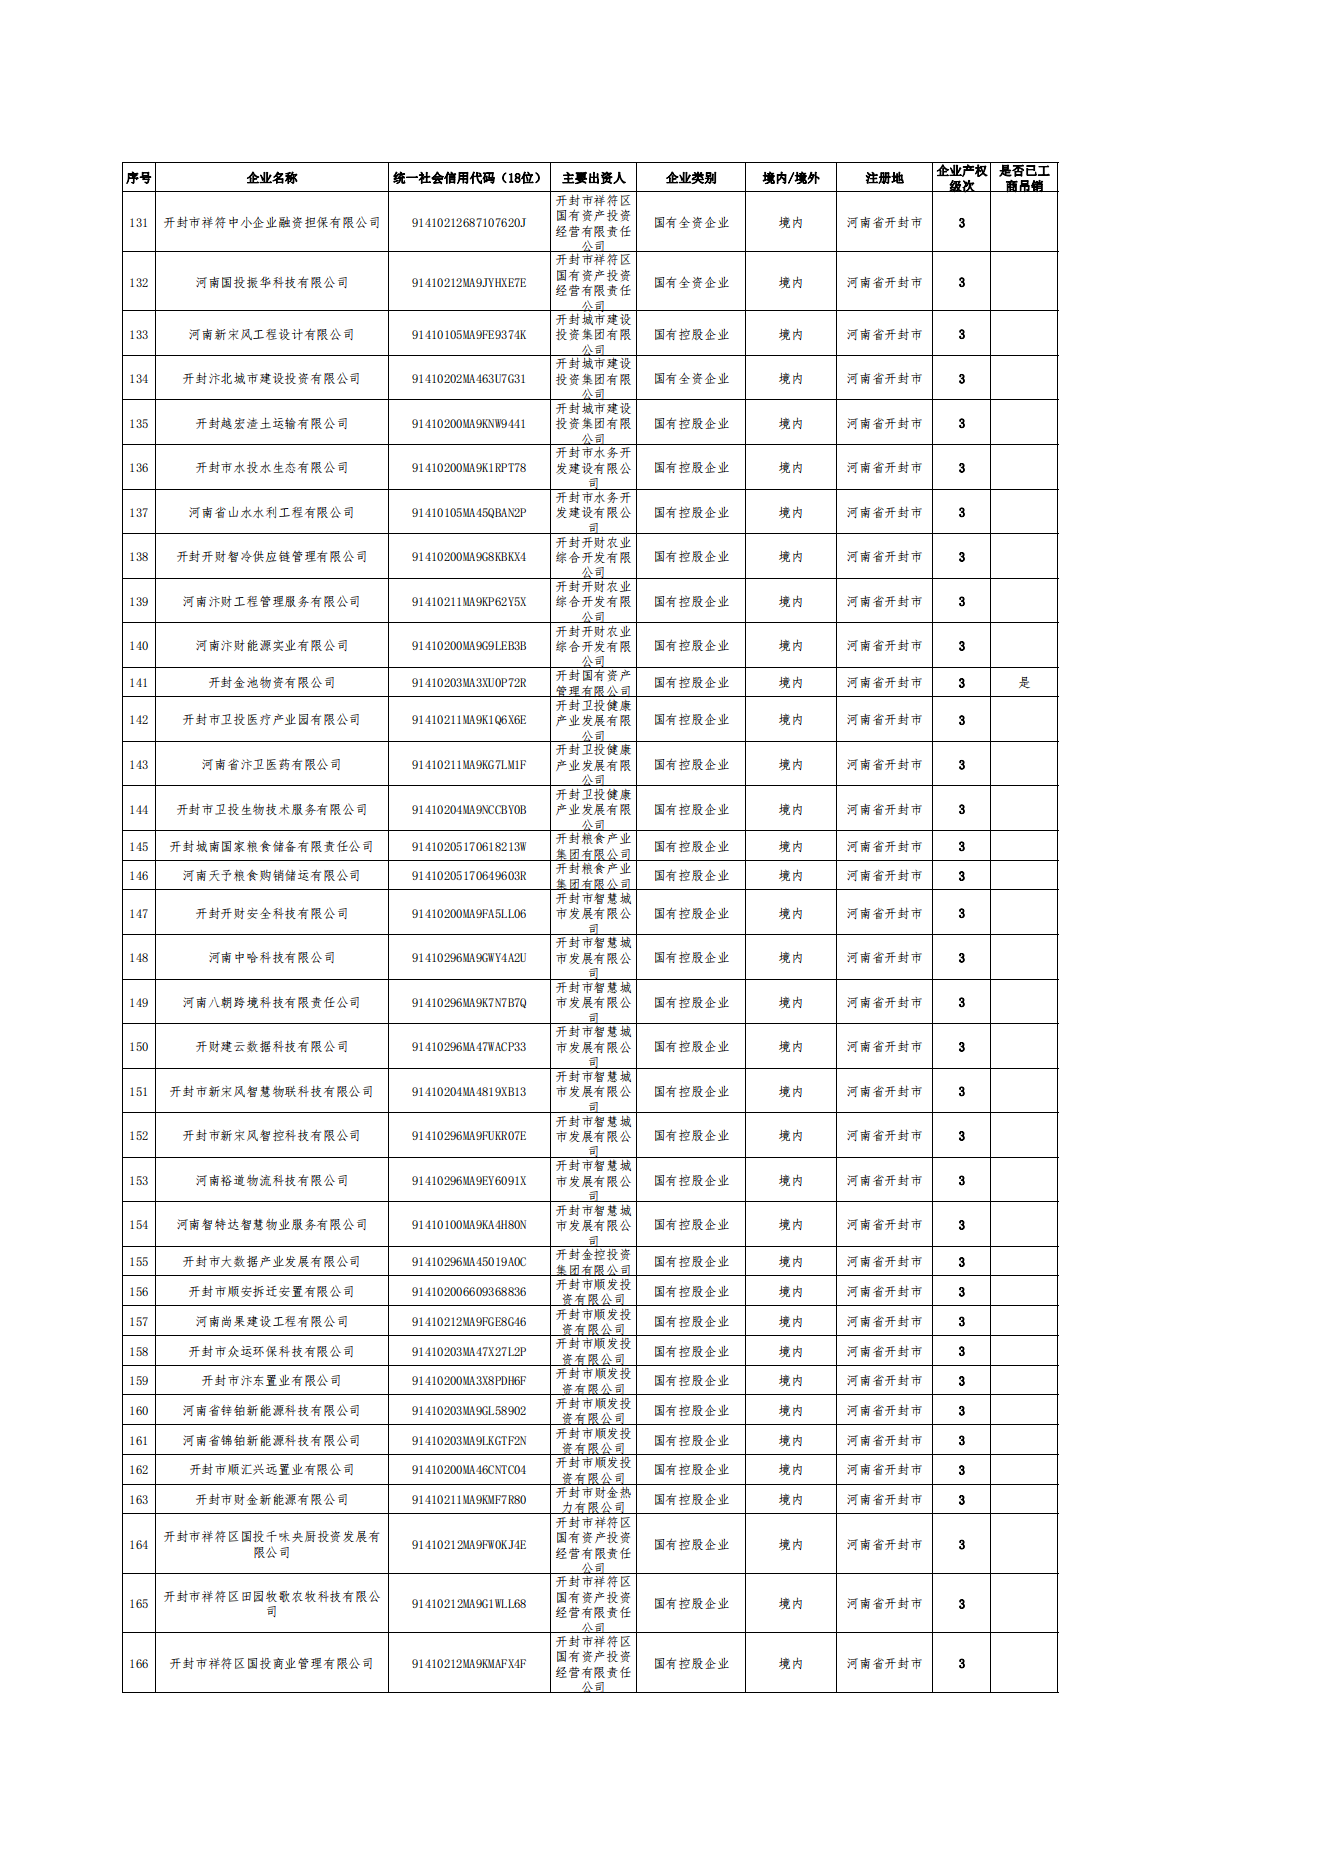 公告-全級次企業名單(1)_04.png